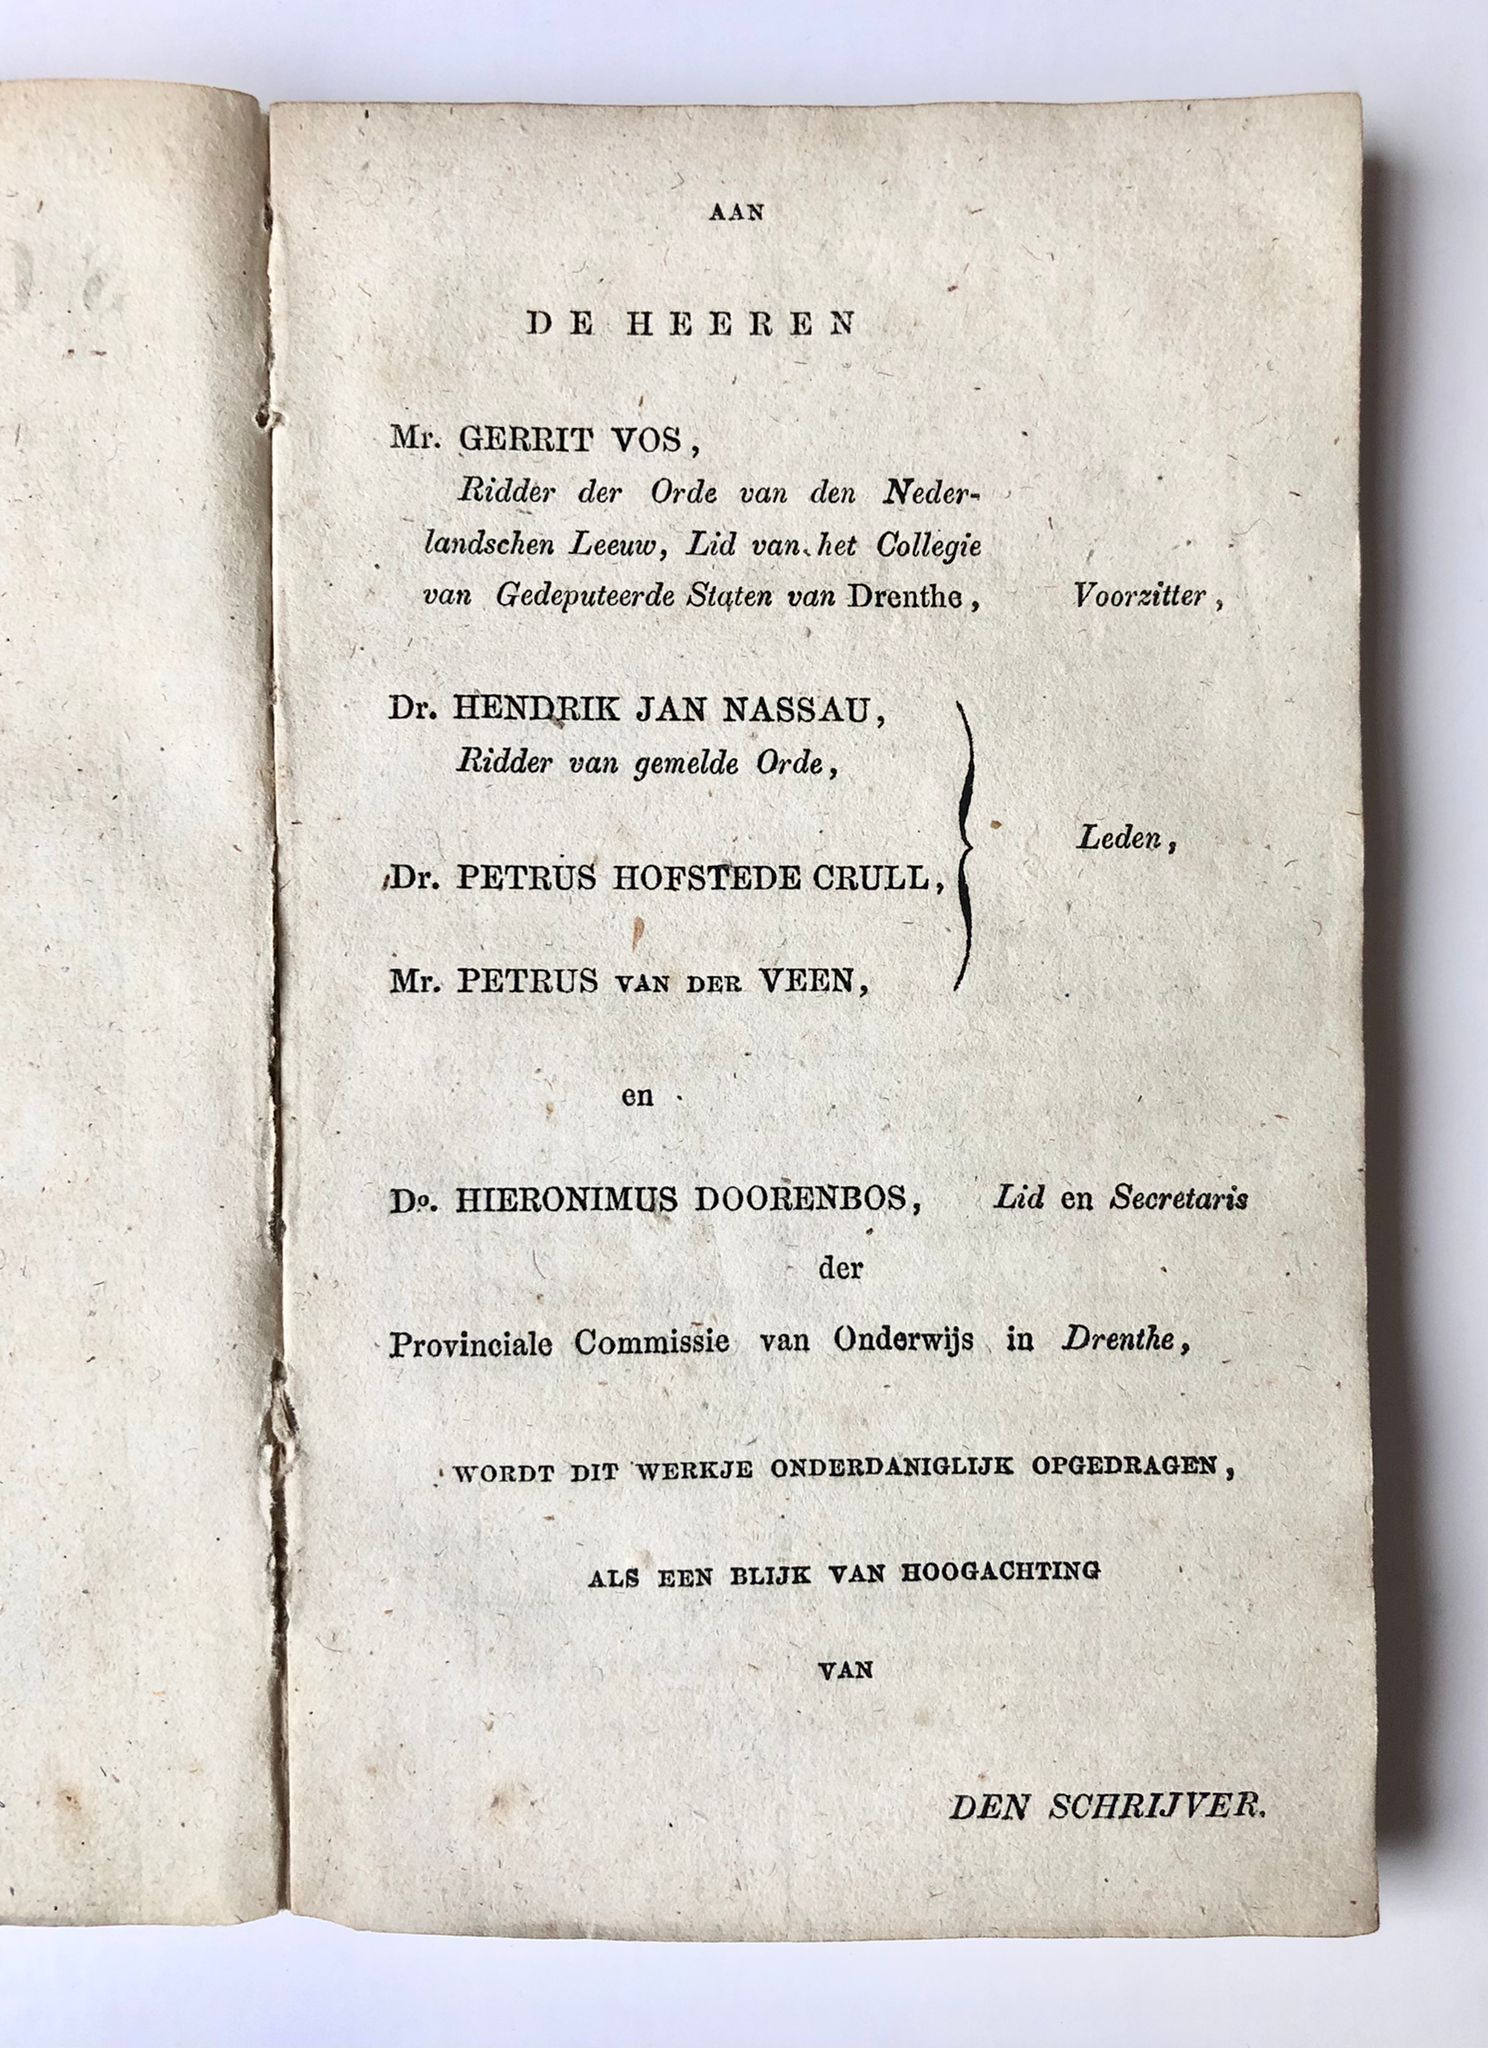 [First edition. Drenthe, Schoolboek] Geschiedkundig schoolboek van Drenthe, (Leesboek voor de hoogste klasse der Lagere Scholen), Door J. S. Magnin, bij J. Oomkens. J. Zoon, te Groningen, 1851, 112 pp.